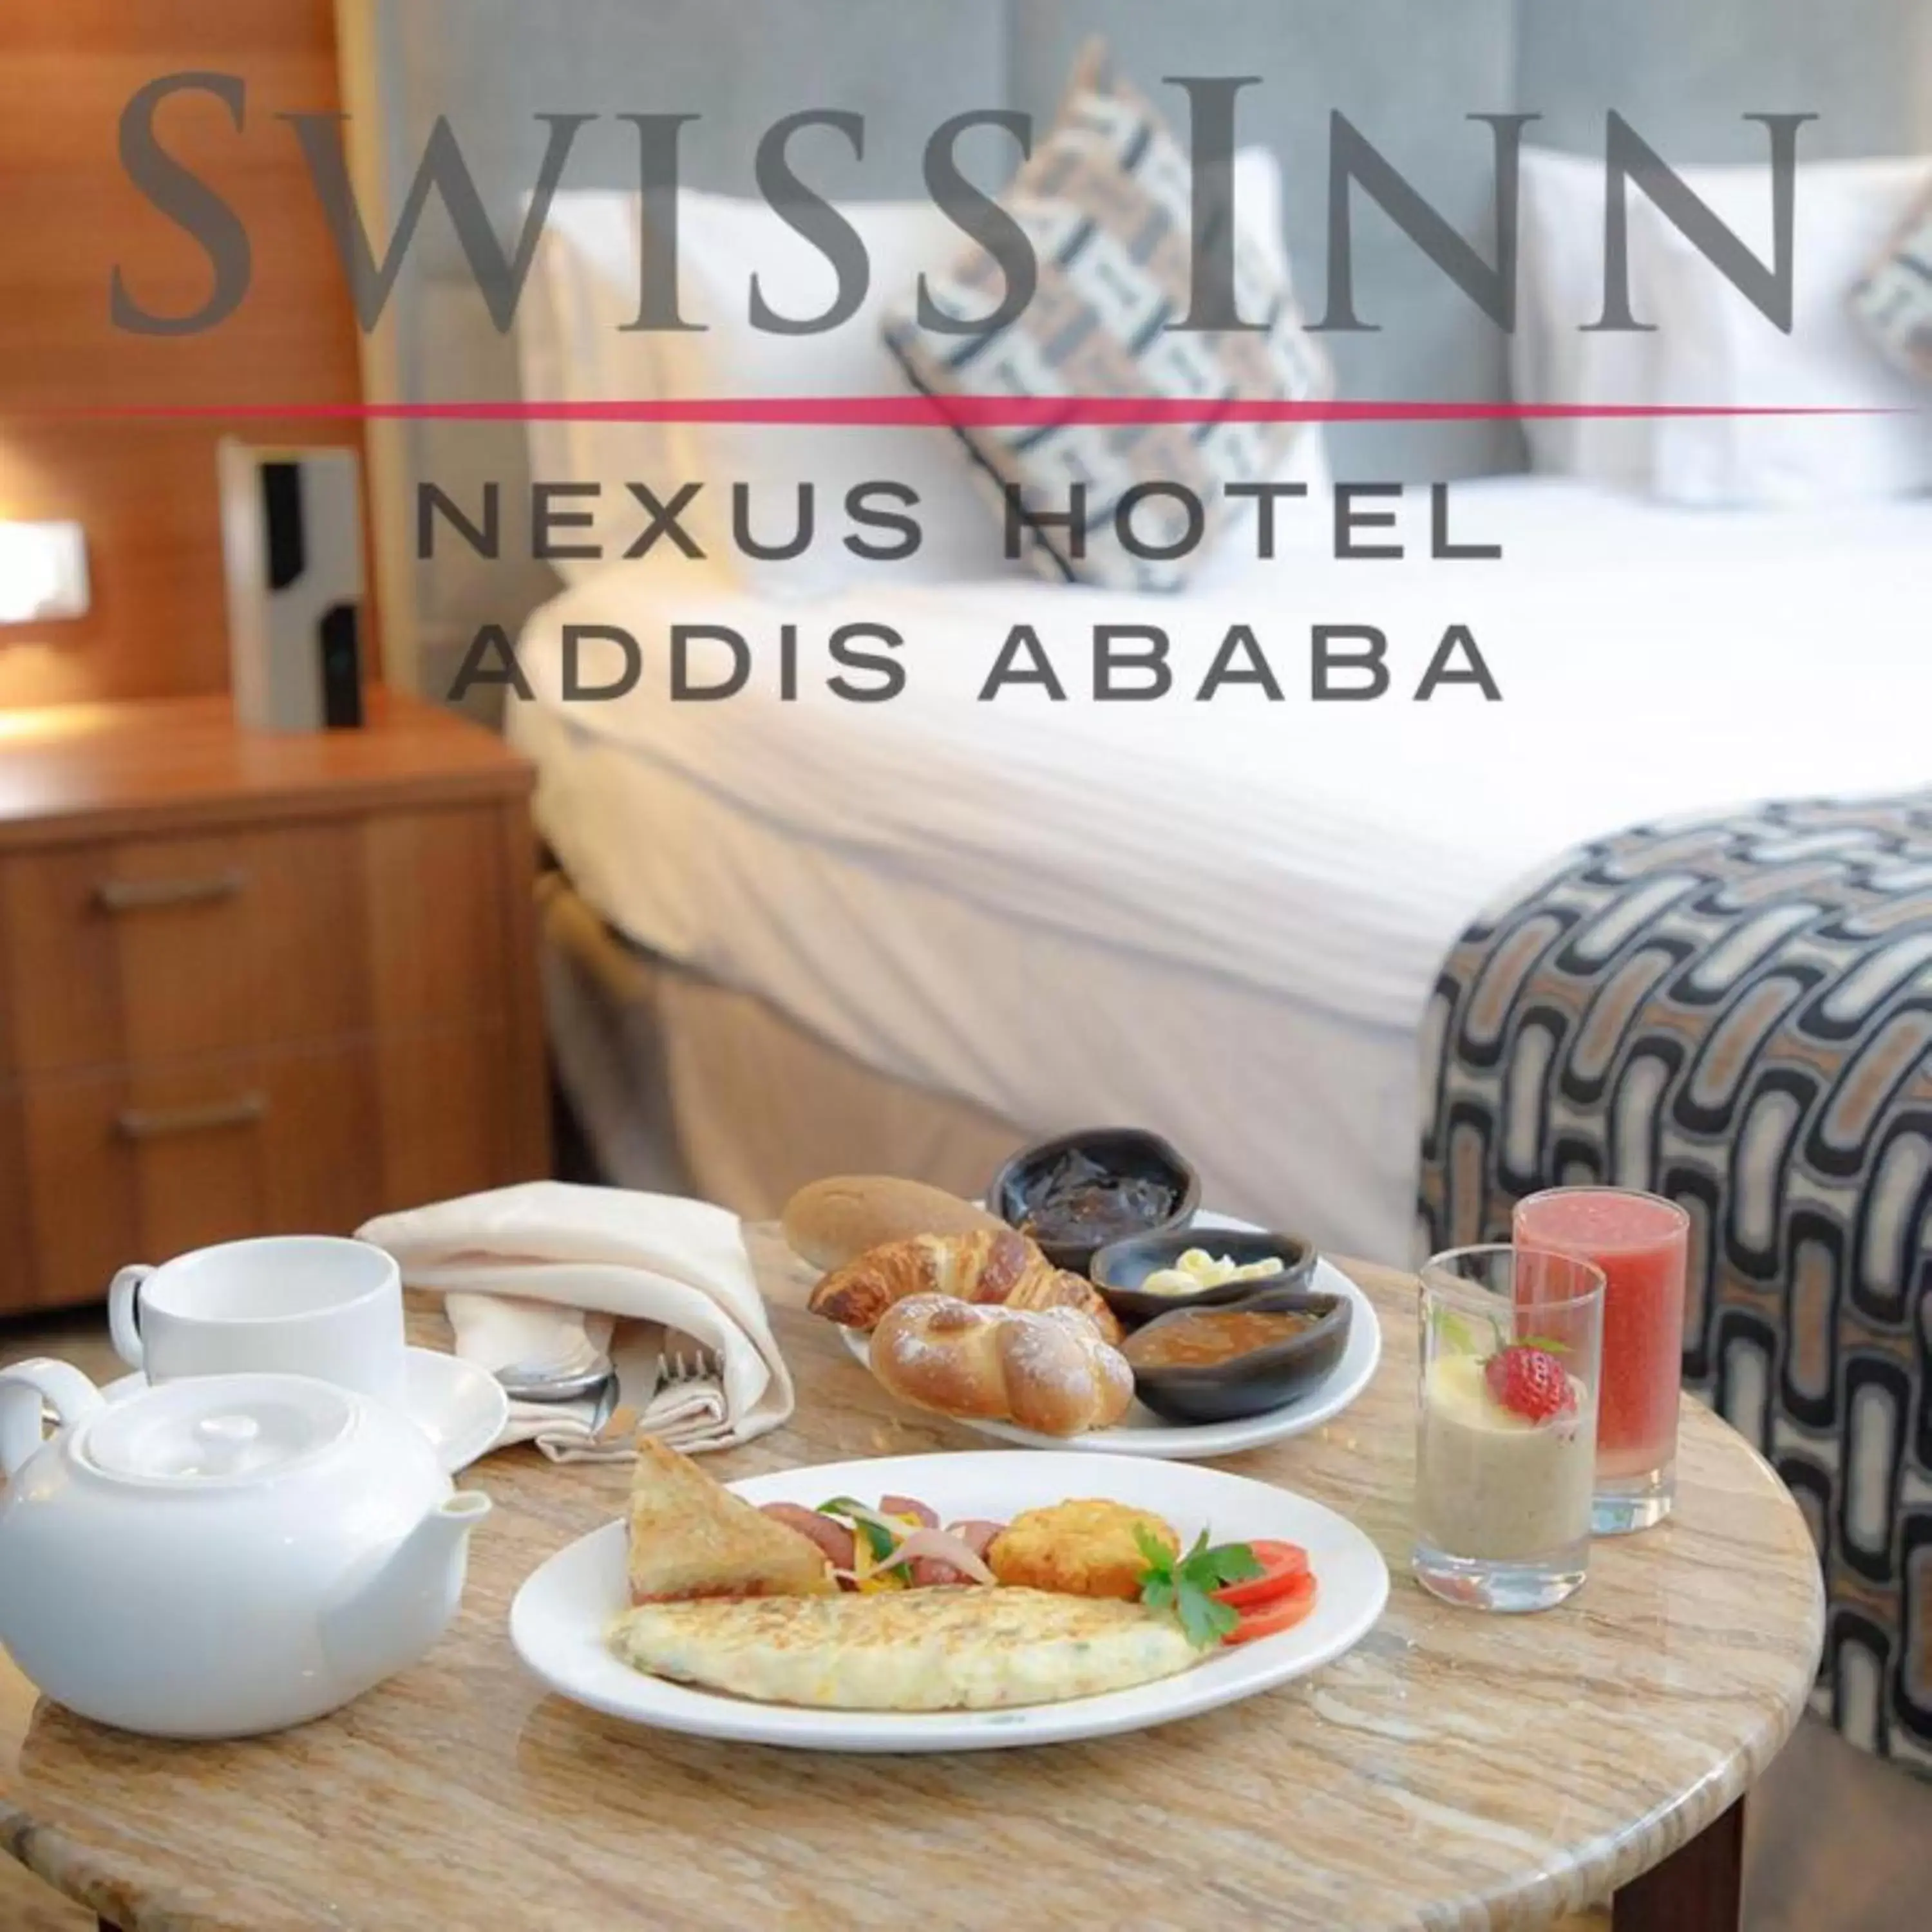 Breakfast in Swiss Inn Nexus Hotel